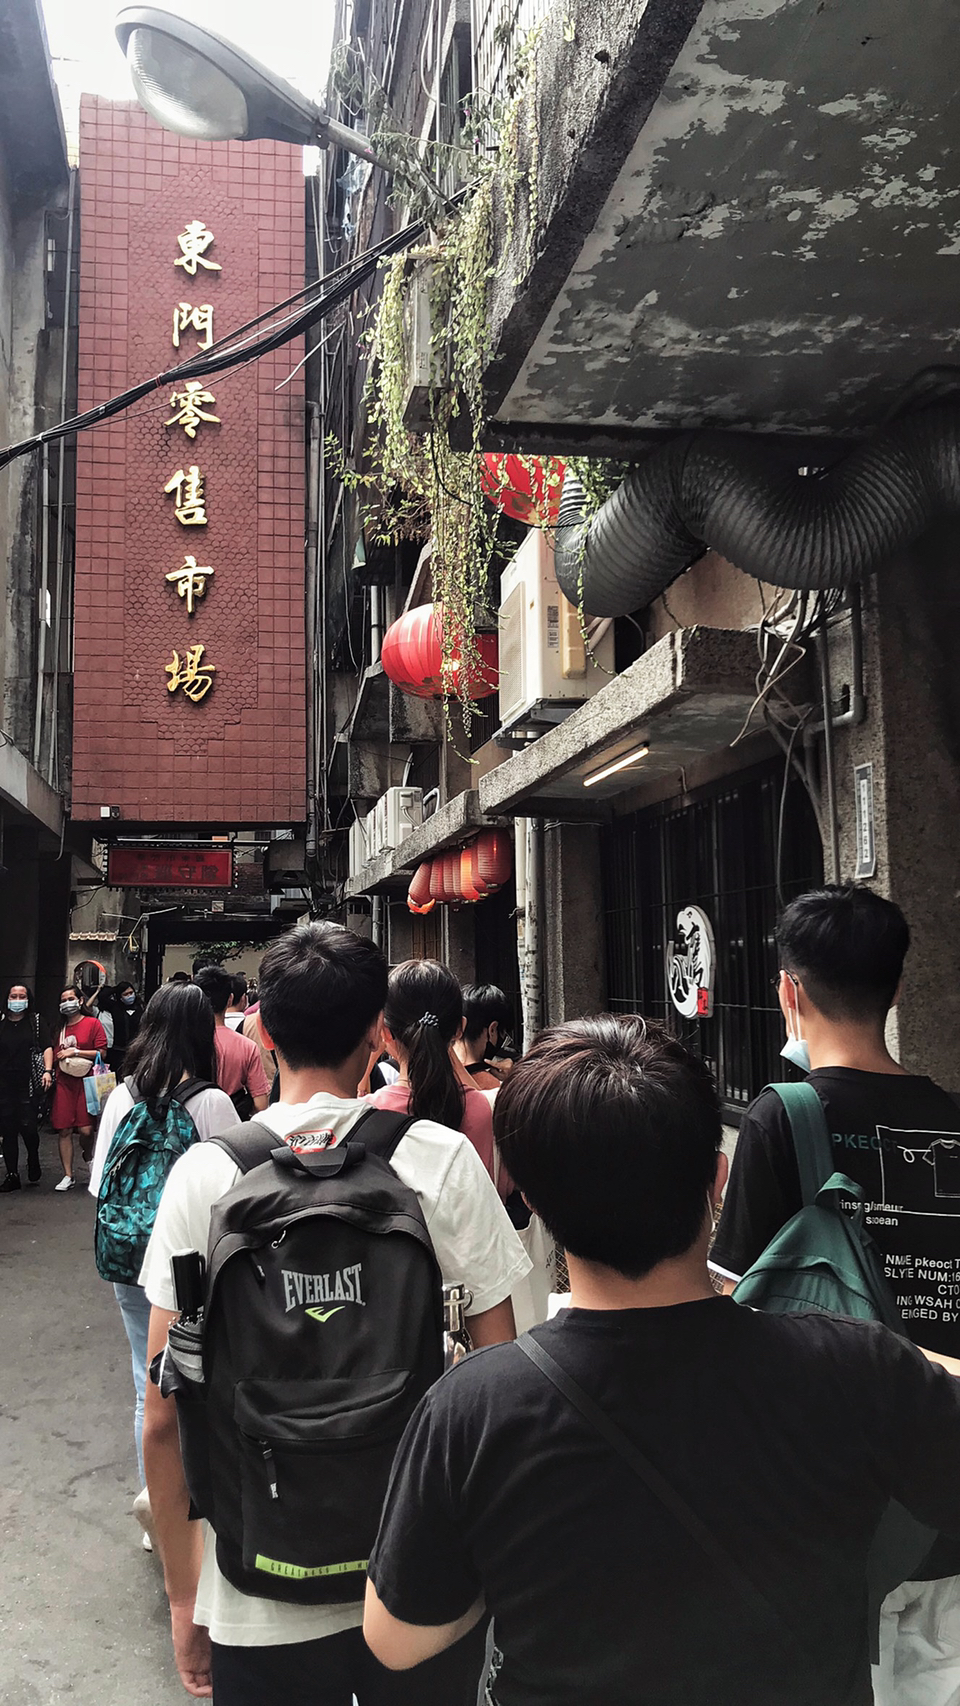 由課程老師帶領，走讀位於新竹舊城區的東門市場，循著城市的歷史軌跡，觀察景物興衰的變化。